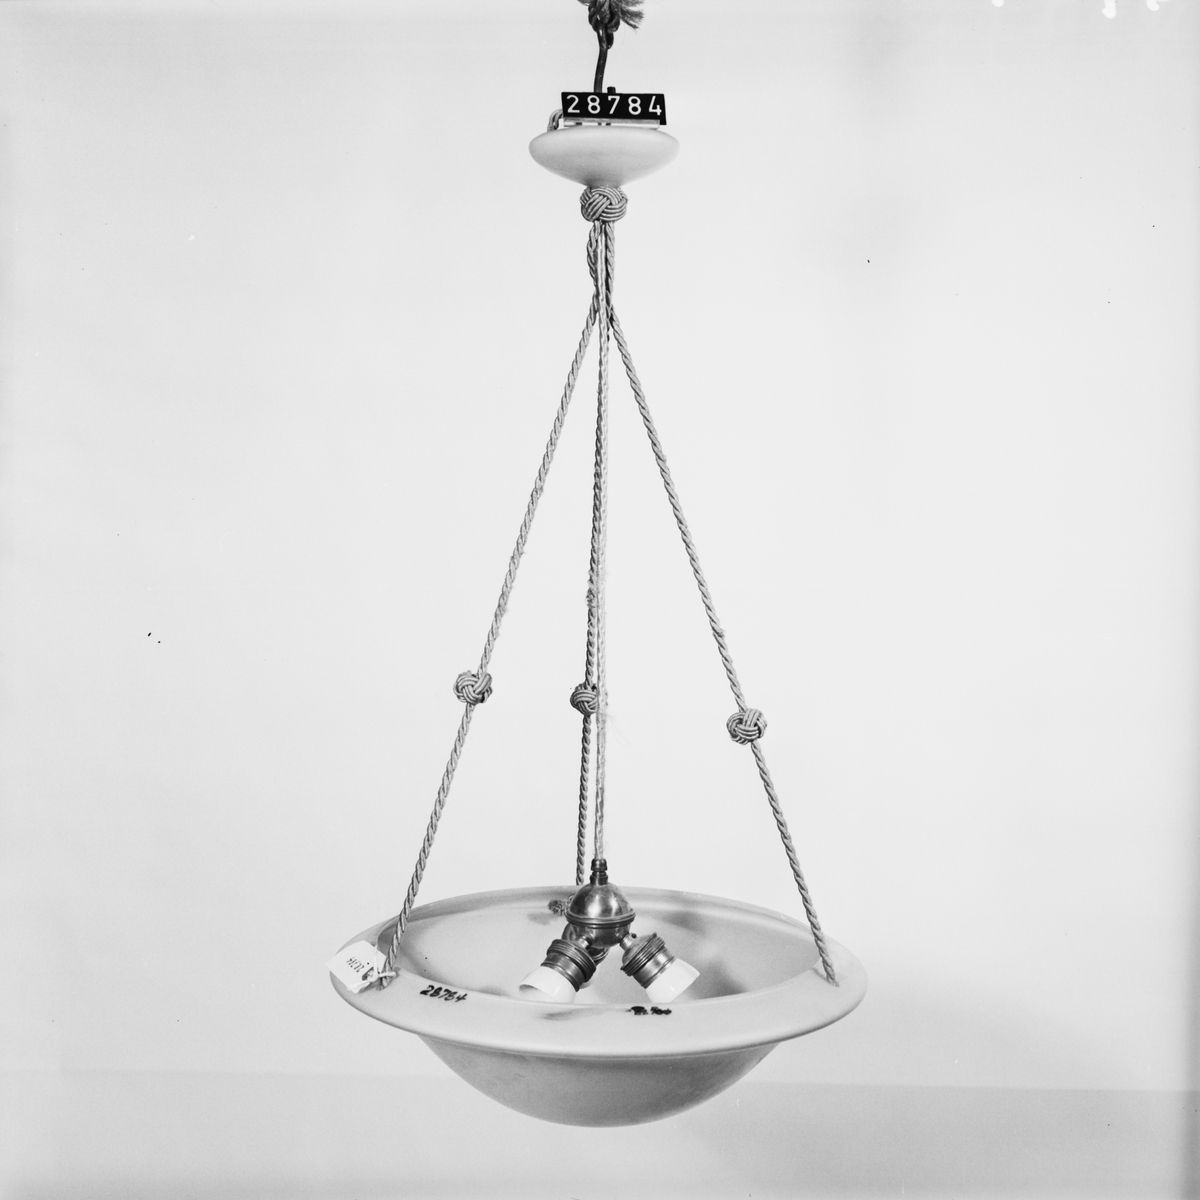 Armatur för rumsbelysning med skål av glas med snören, jämte tre hållare för glödlampor och ledning.